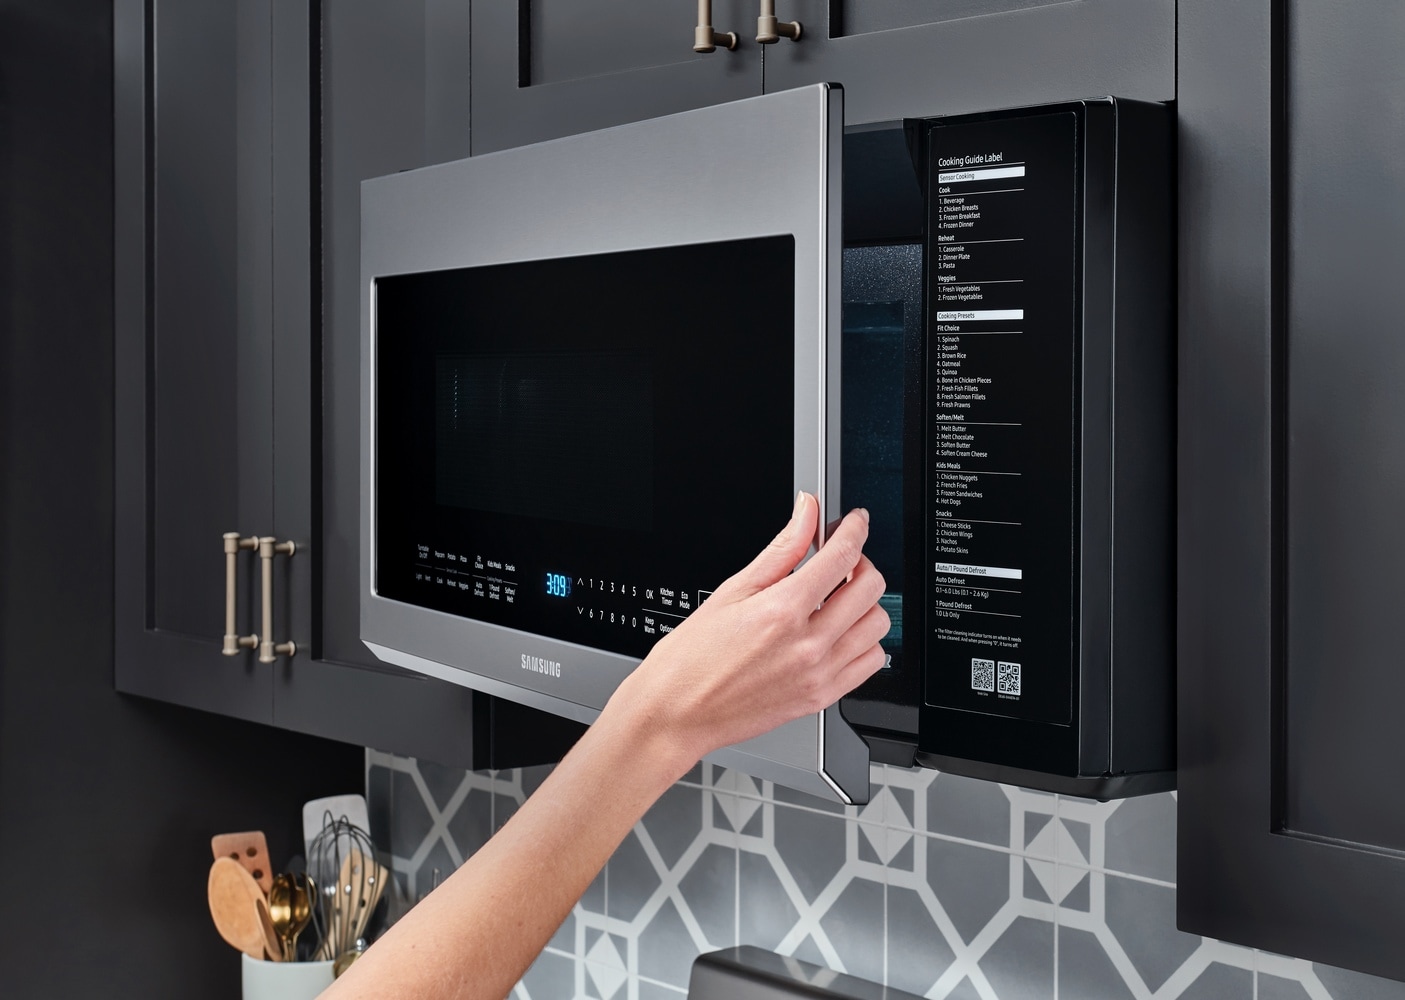 1.1 Cu ft Sensor Microwave Oven – Beautiful™